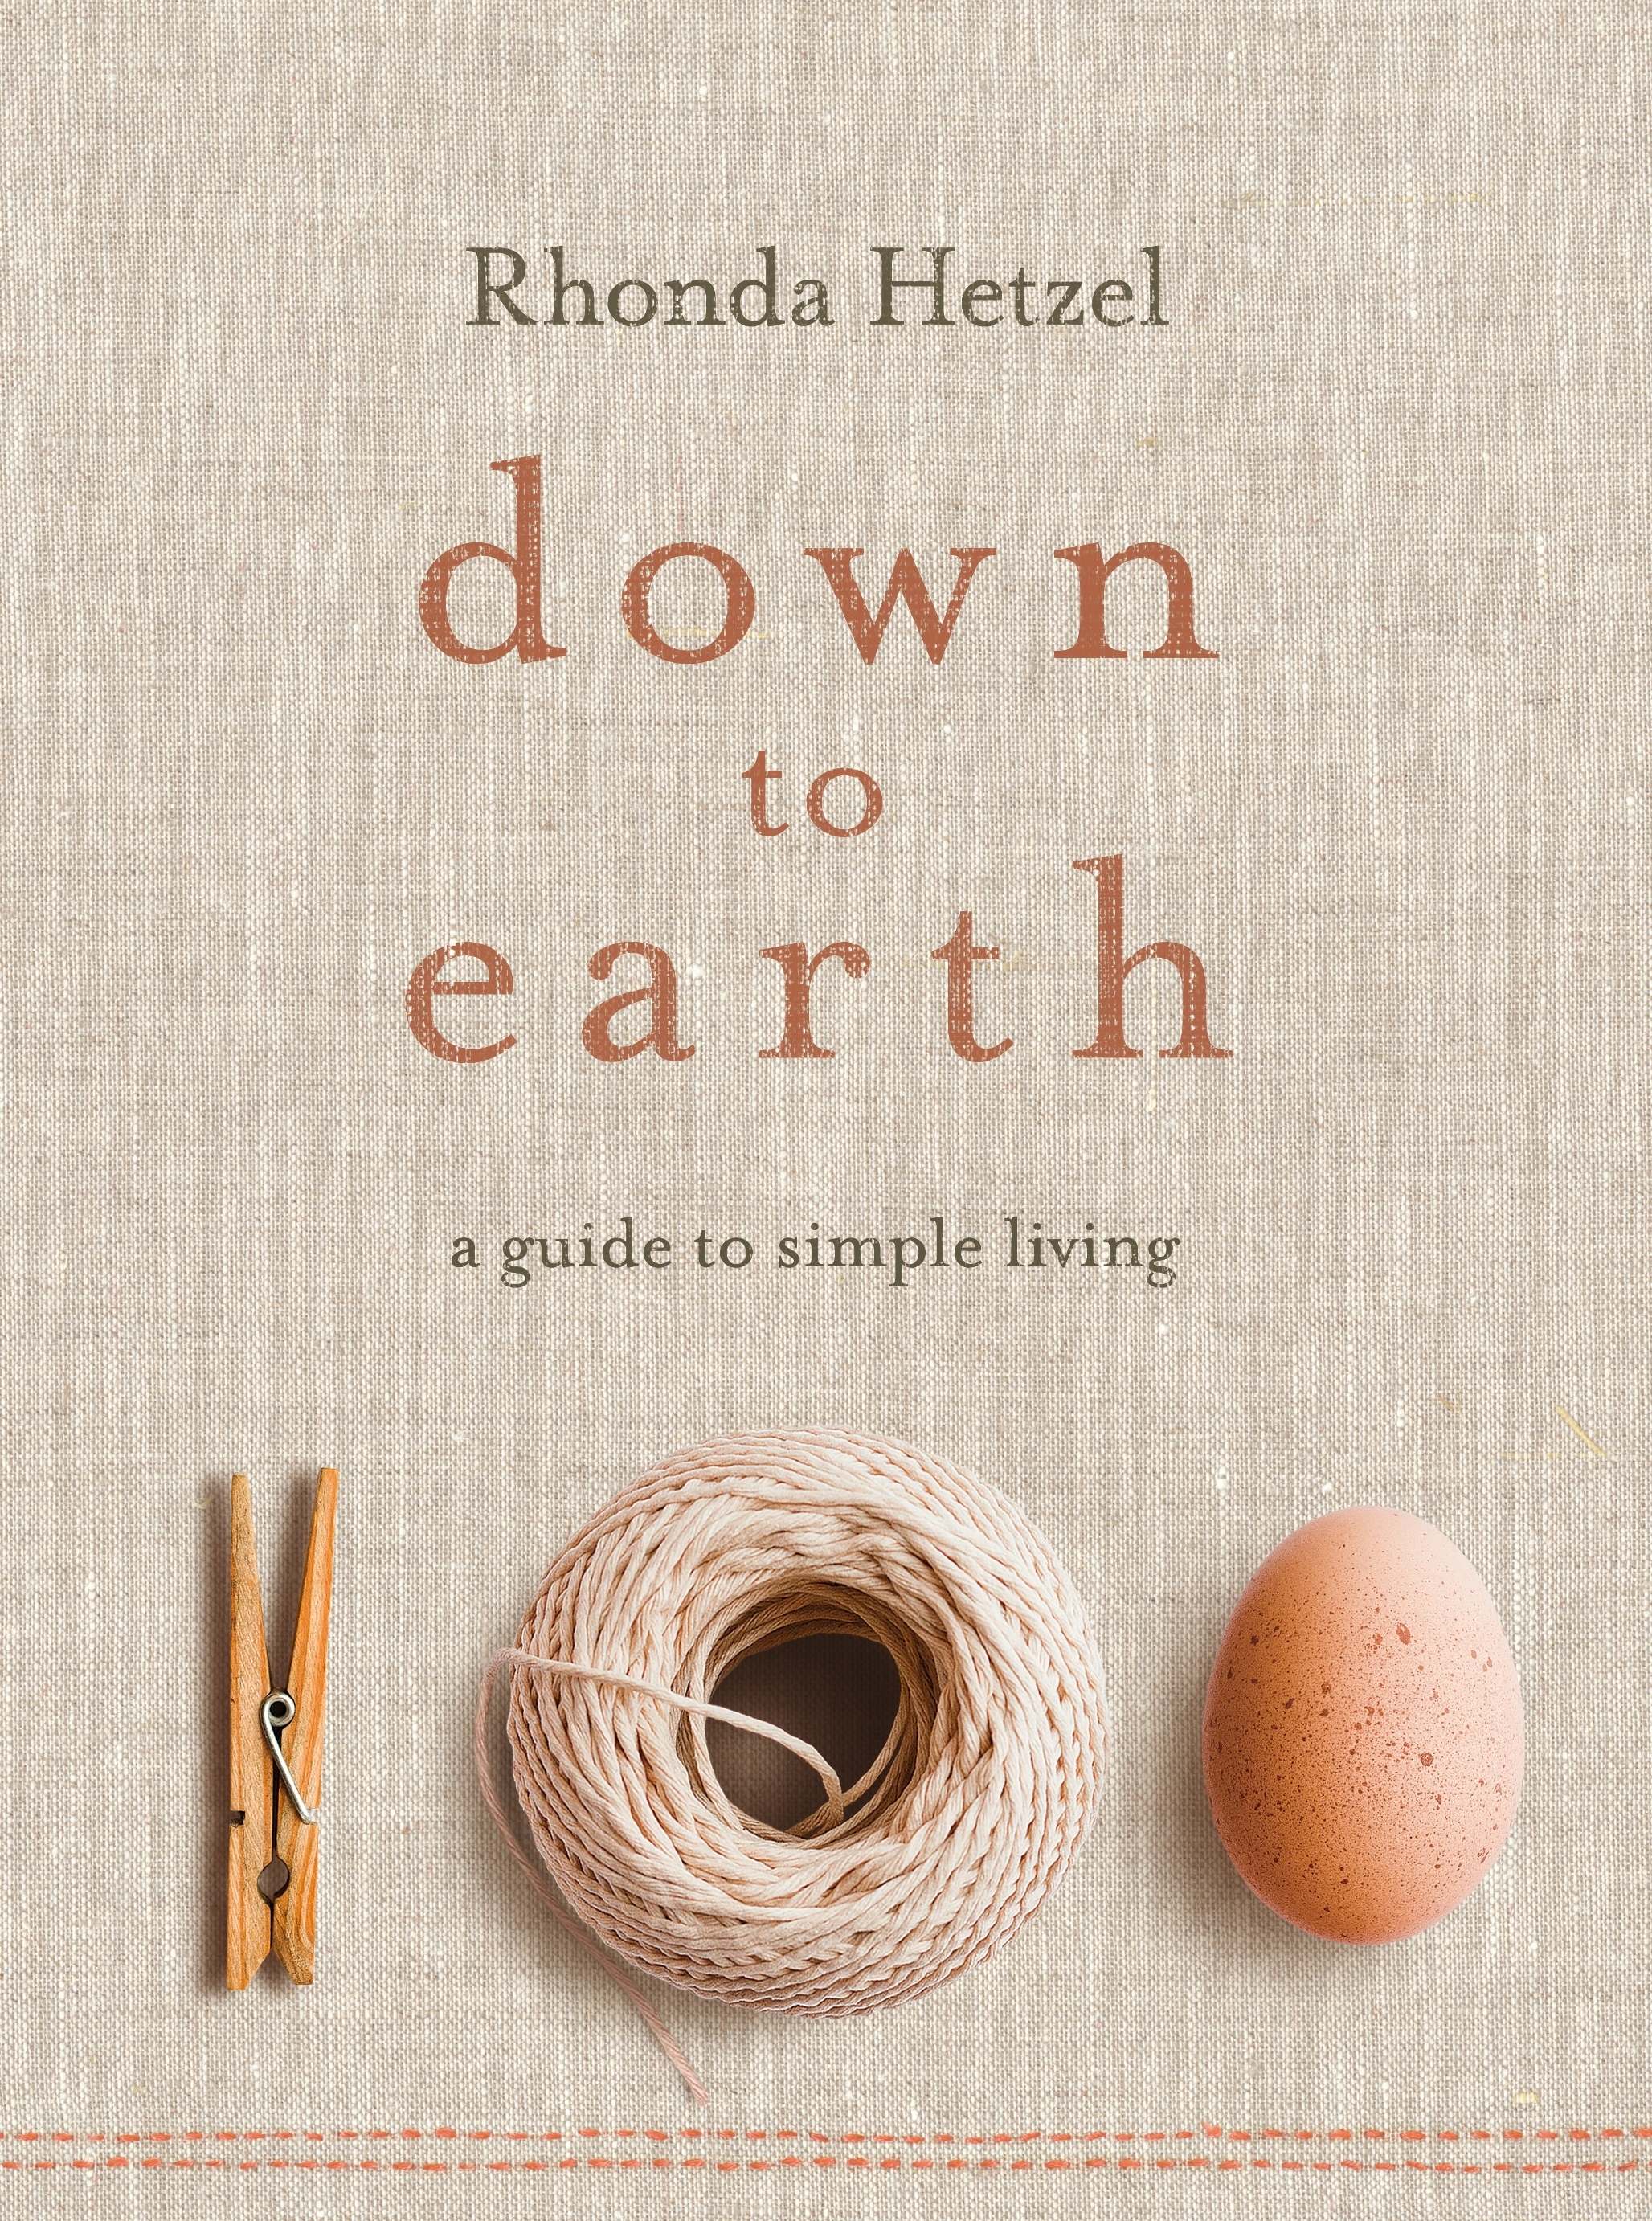 Down to Earth by Rhonda Hetzel - Penguin Books Australia